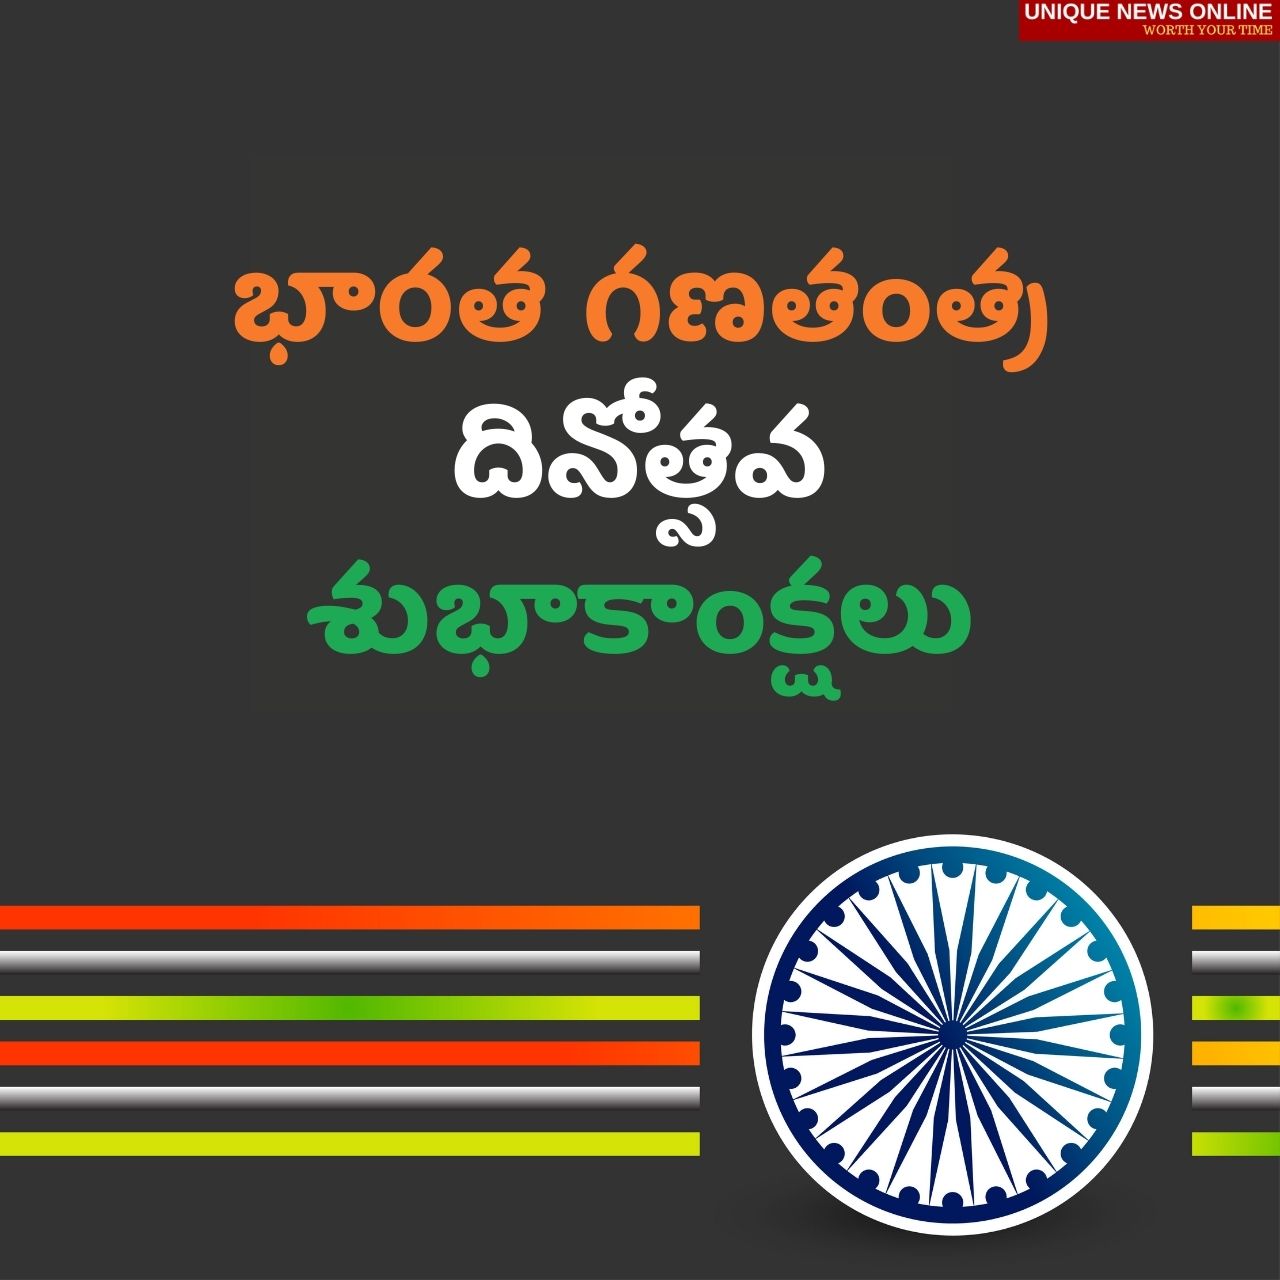 भारतीय प्रजासत्ताक दिनाच्या शुभेच्छा